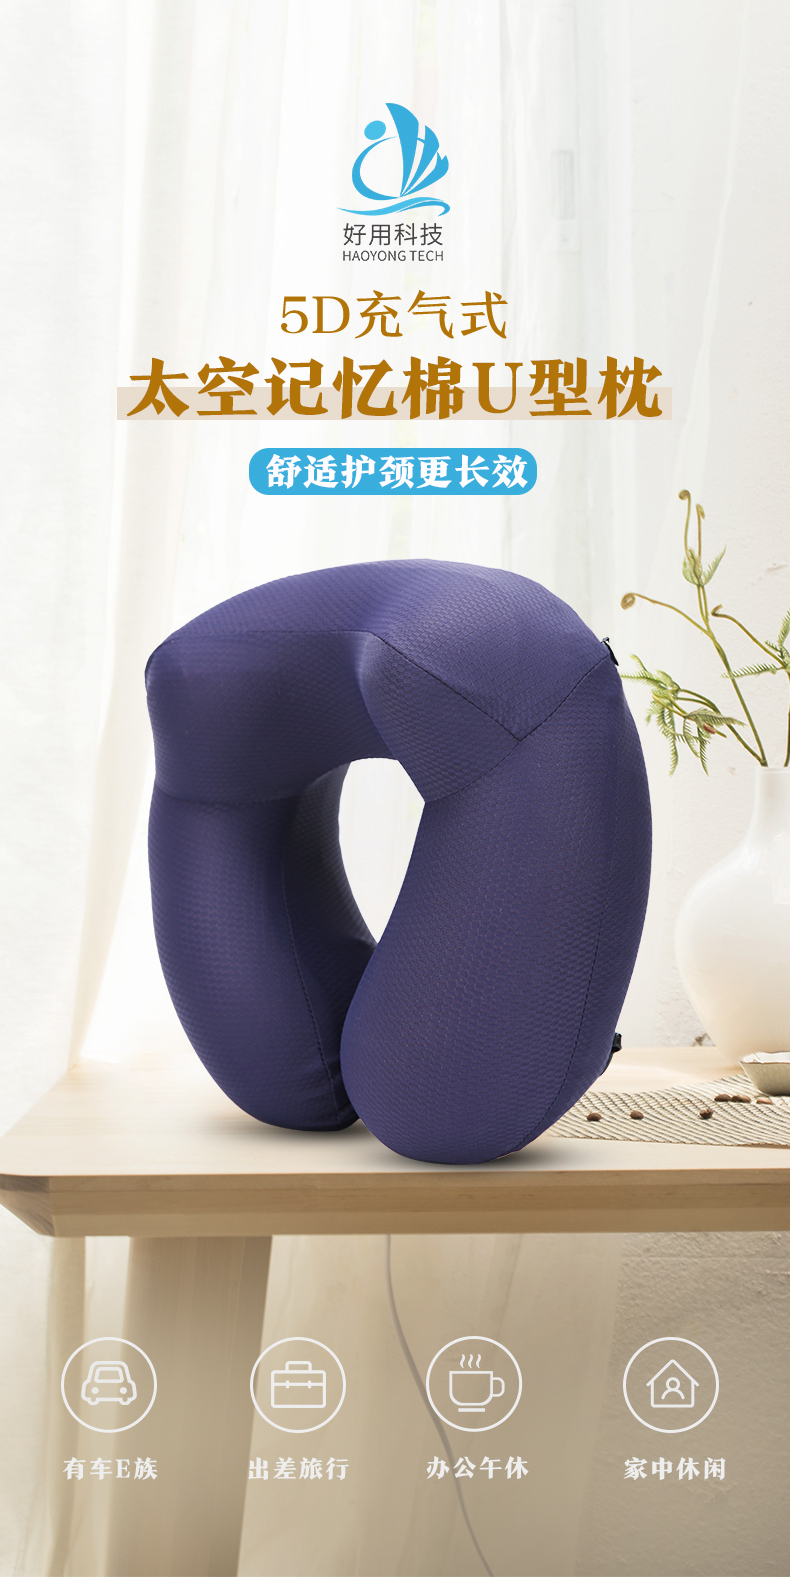 颈枕代理_按摩颈枕相关-广州好用科技有限公司